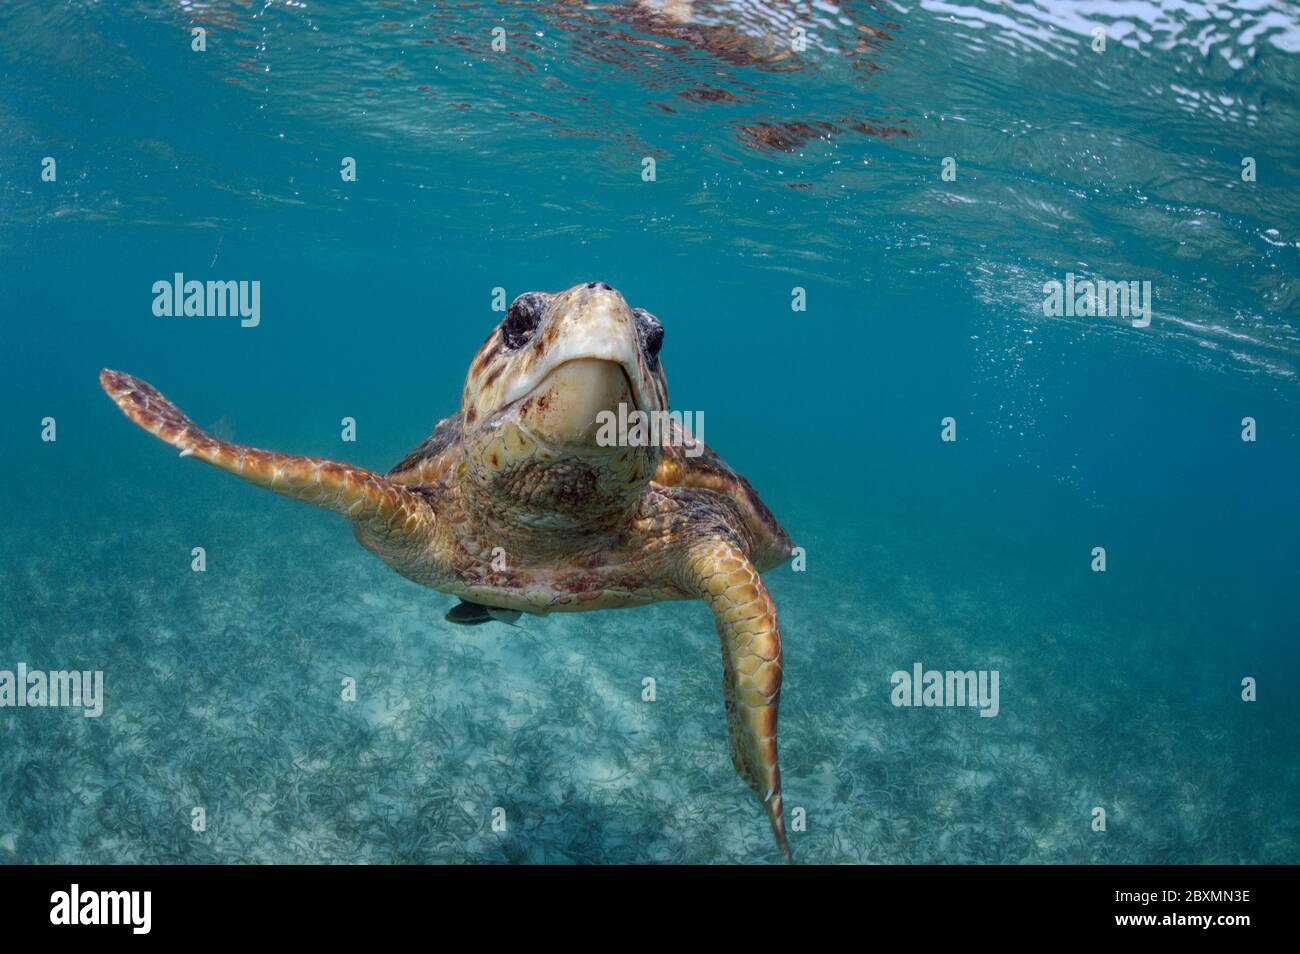 La capocera è immersa nella barriera corallina di Belize Foto Stock